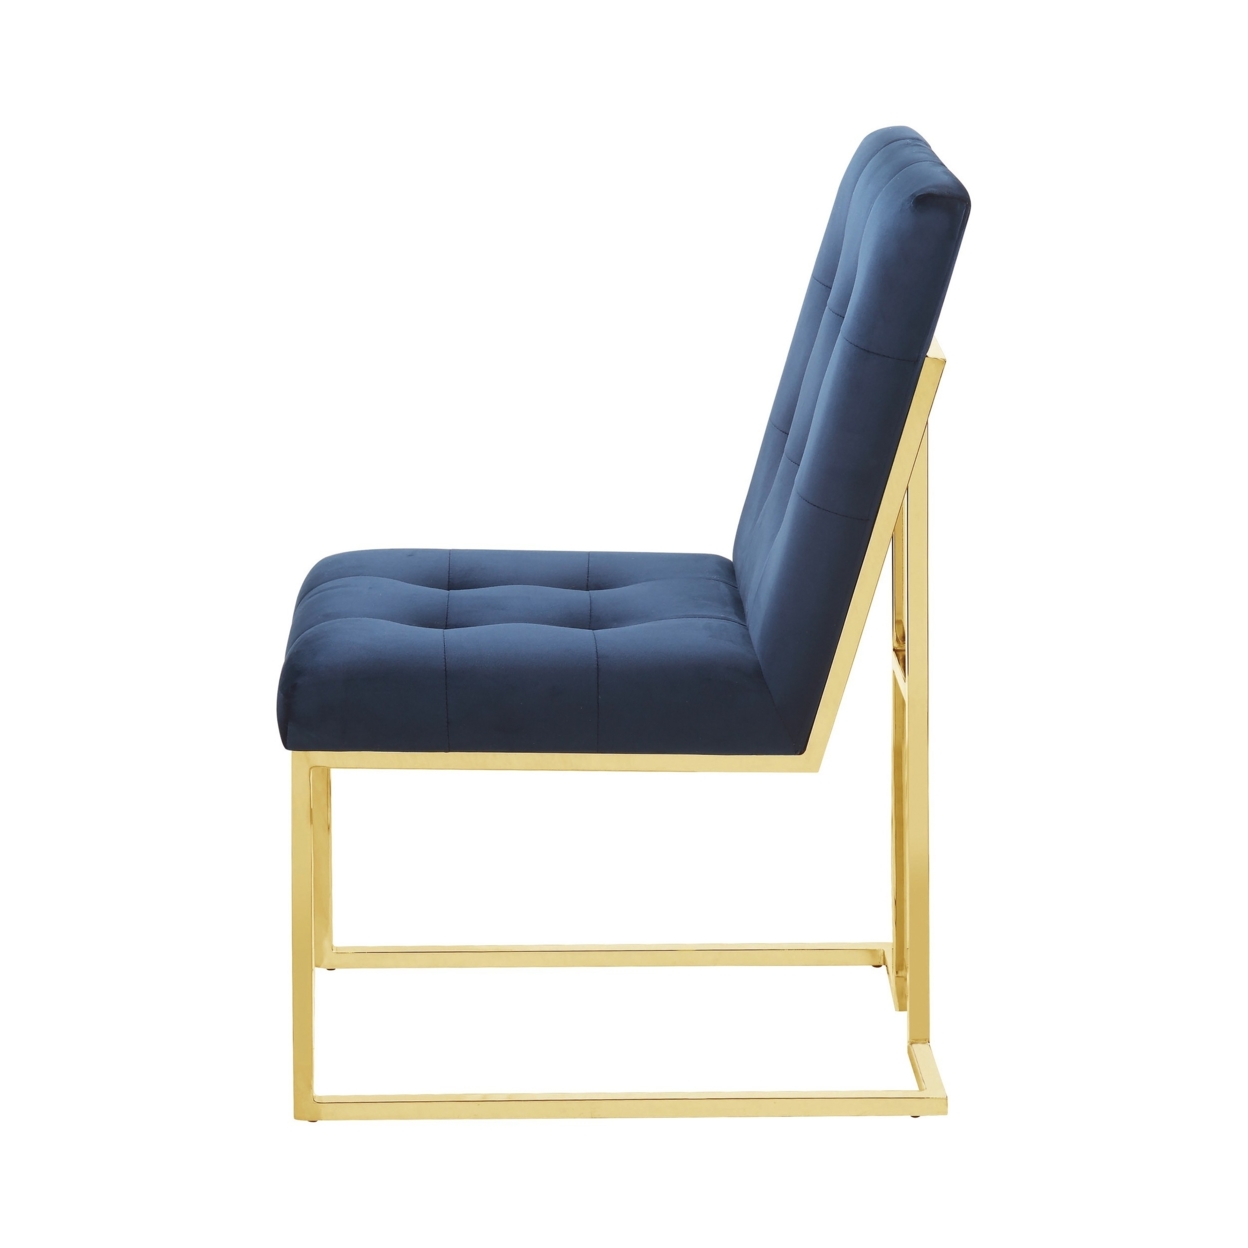 19 Inch Modern Dining Chair, Set Of 2, Blue Velvet Fabric, Gold Metal Frame- Saltoro Sherpi